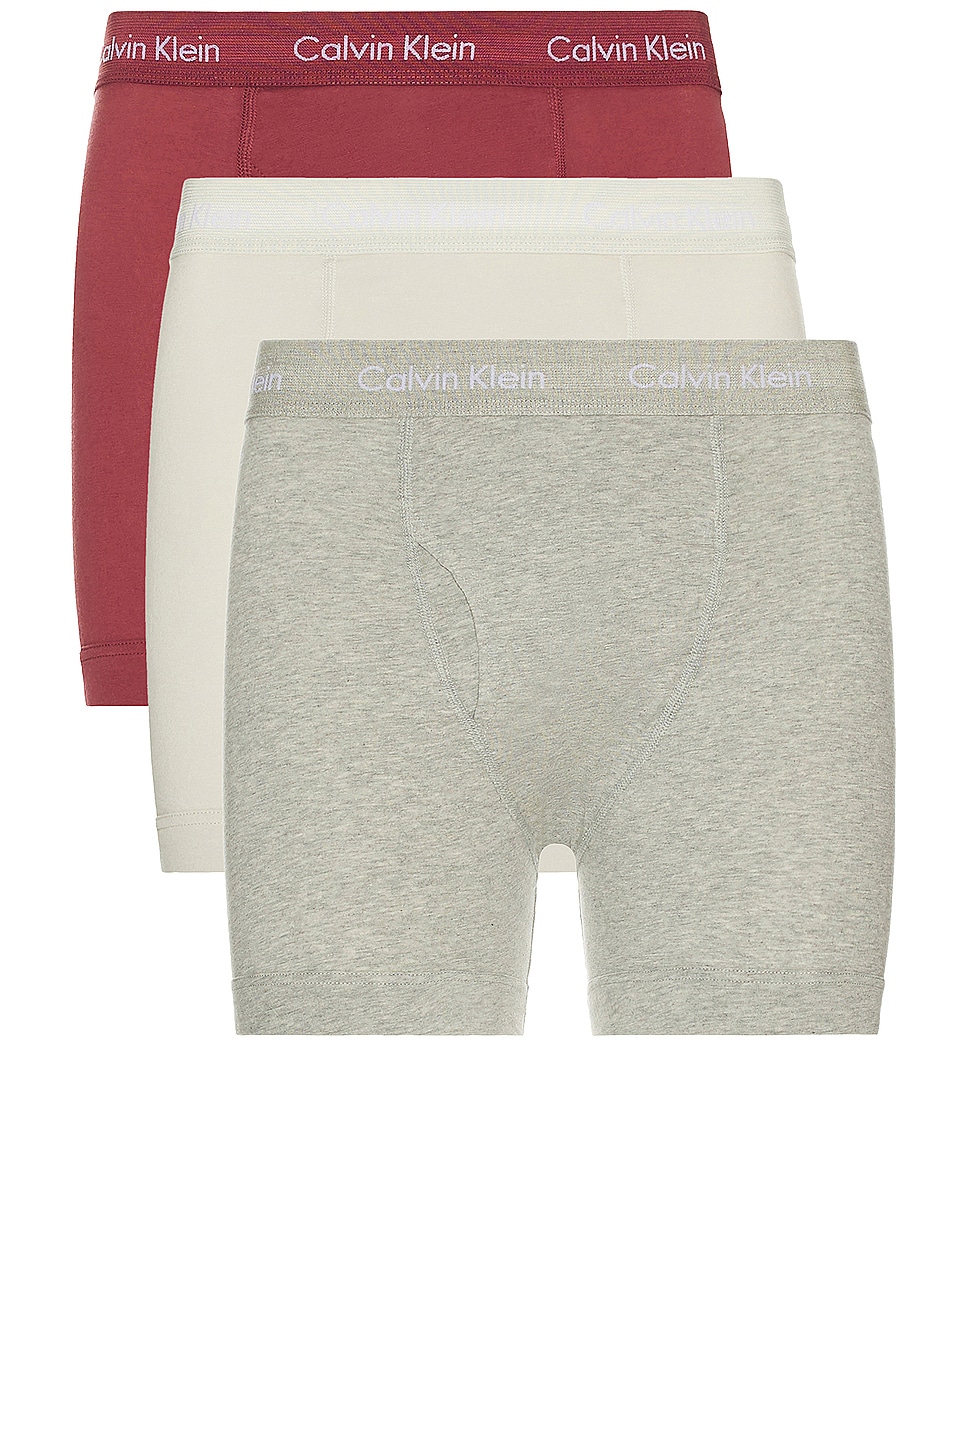 Calvin Klein Underwear Boxer Brief 3-pack in B10 Grey Heather